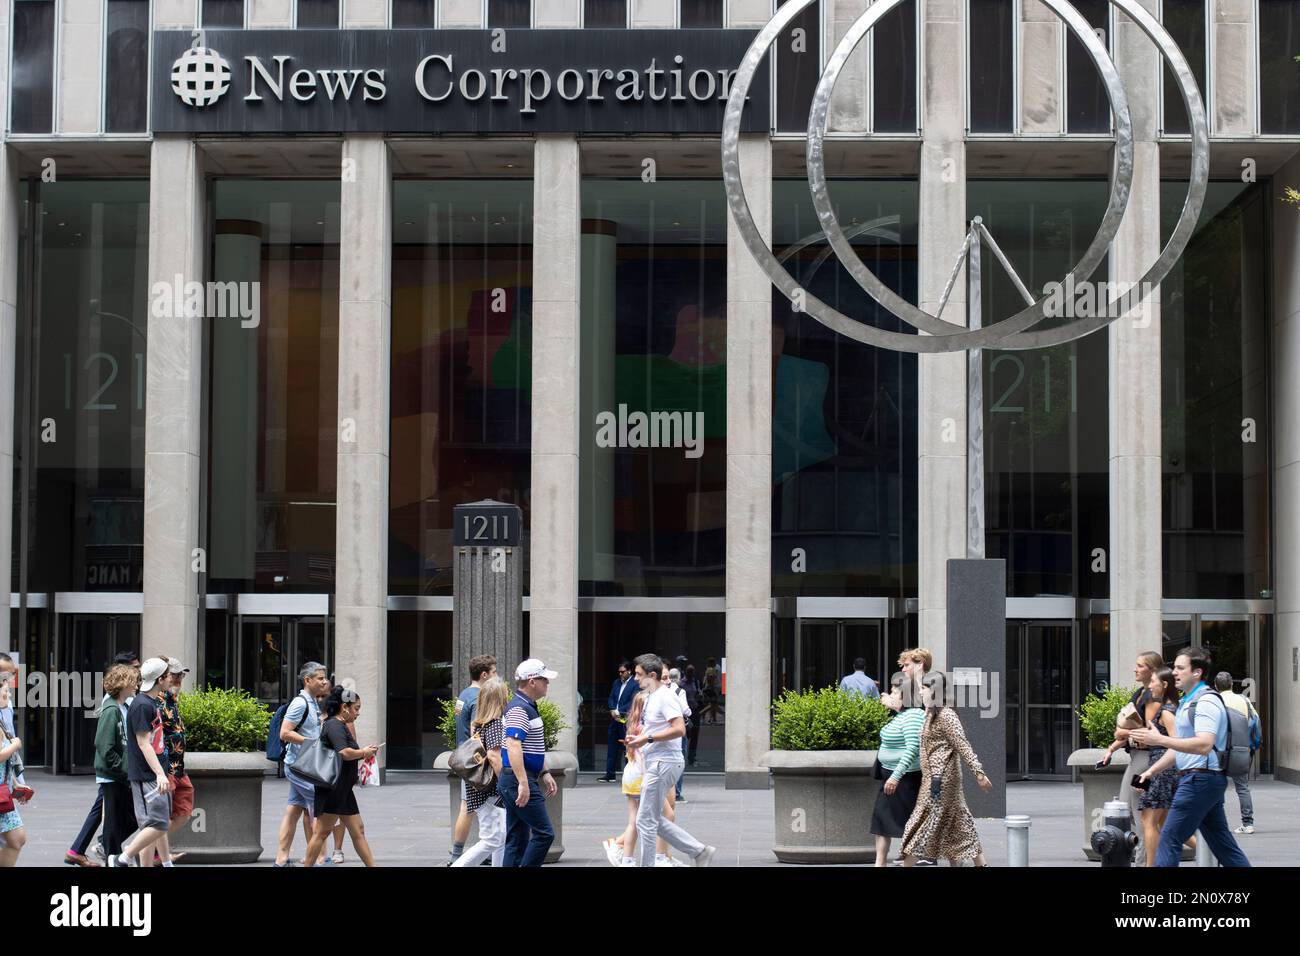 Vue de face du siège social de News Corporation, une société américaine de médias et d'édition, à New York, mercredi, 6 juillet 2022. Banque D'Images